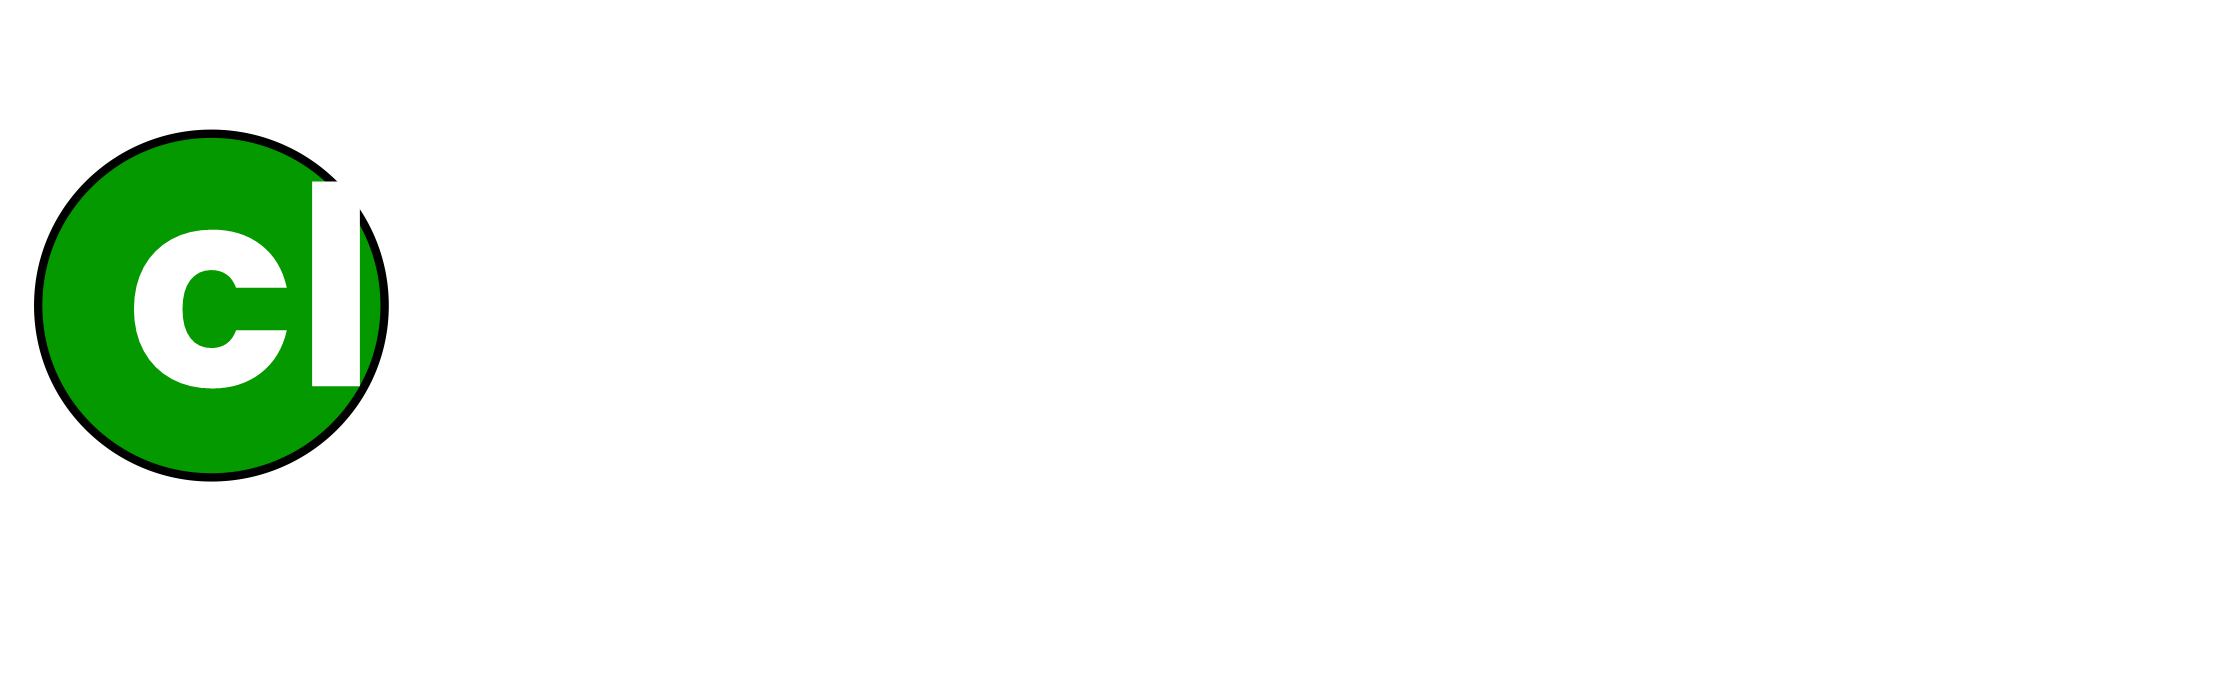 Classes NG logo single